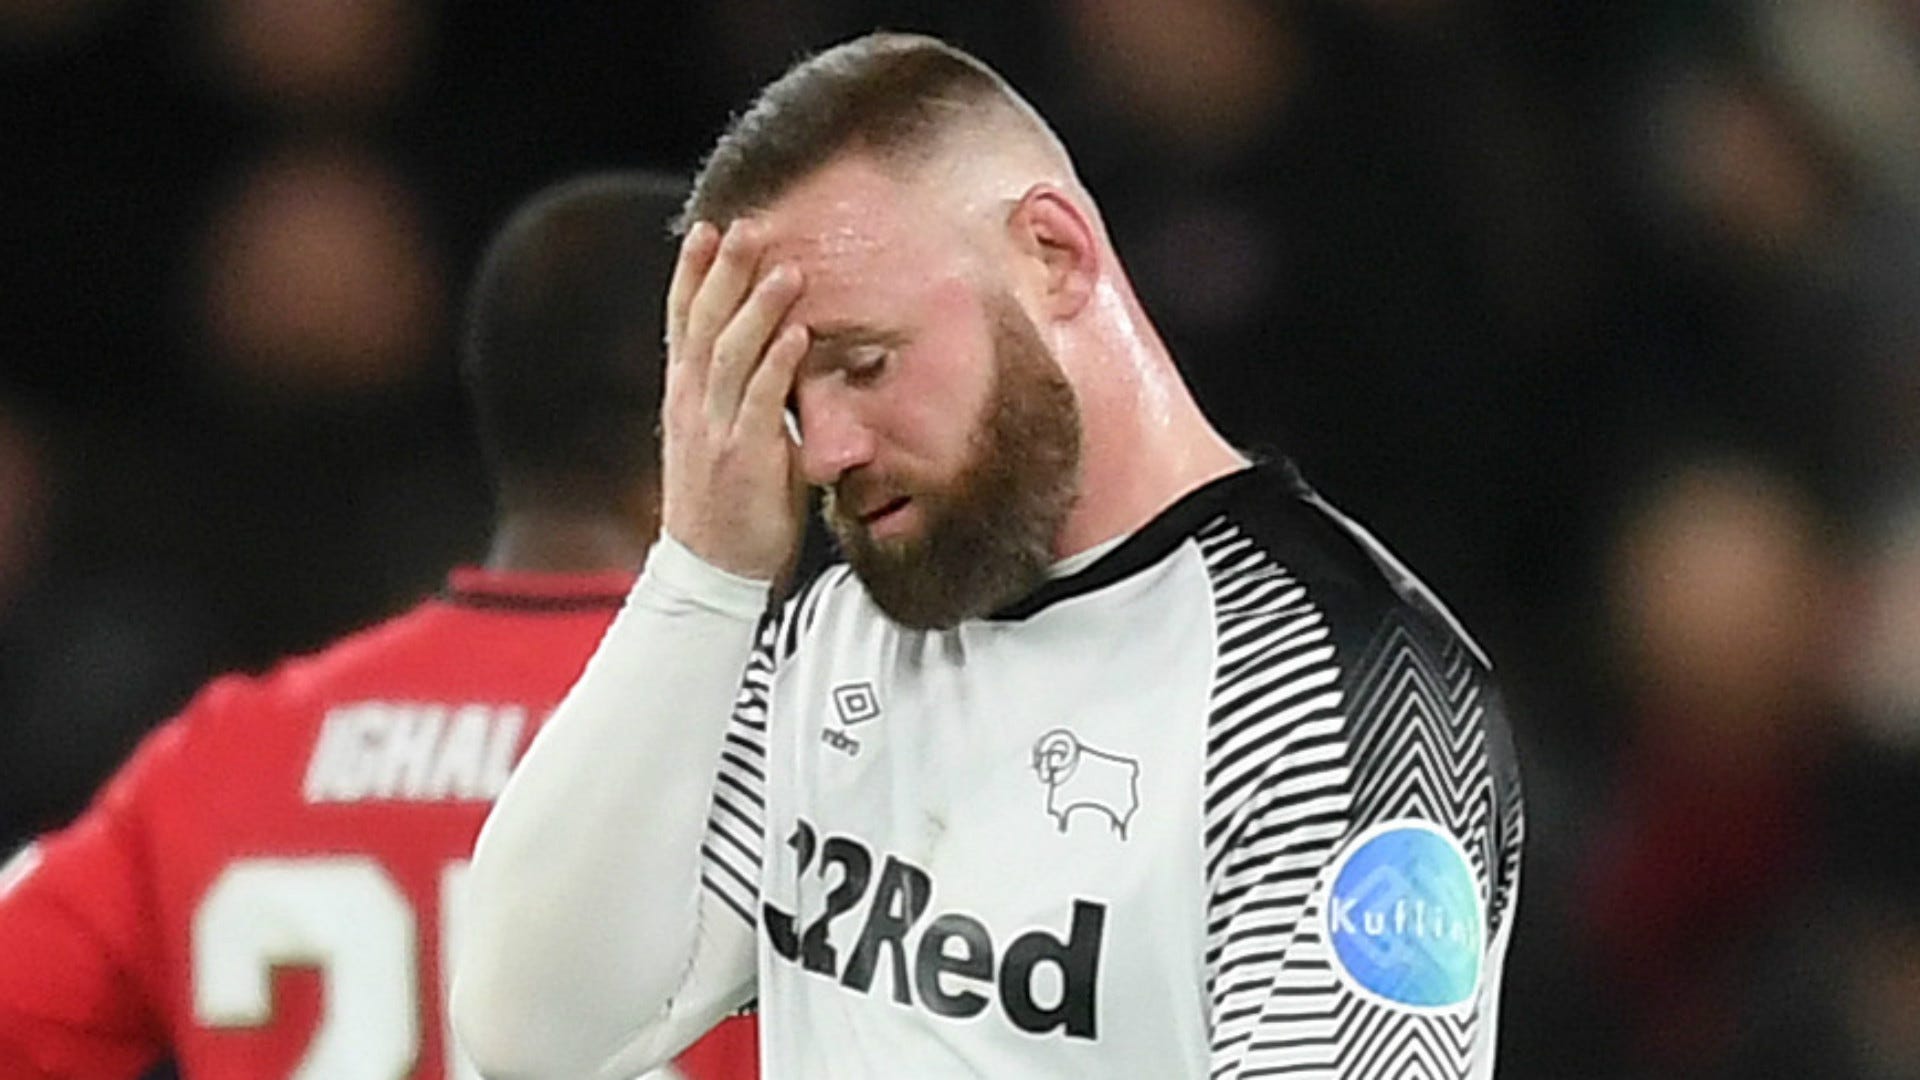 Derby County de Rooney despromovido em final de jogo dramático